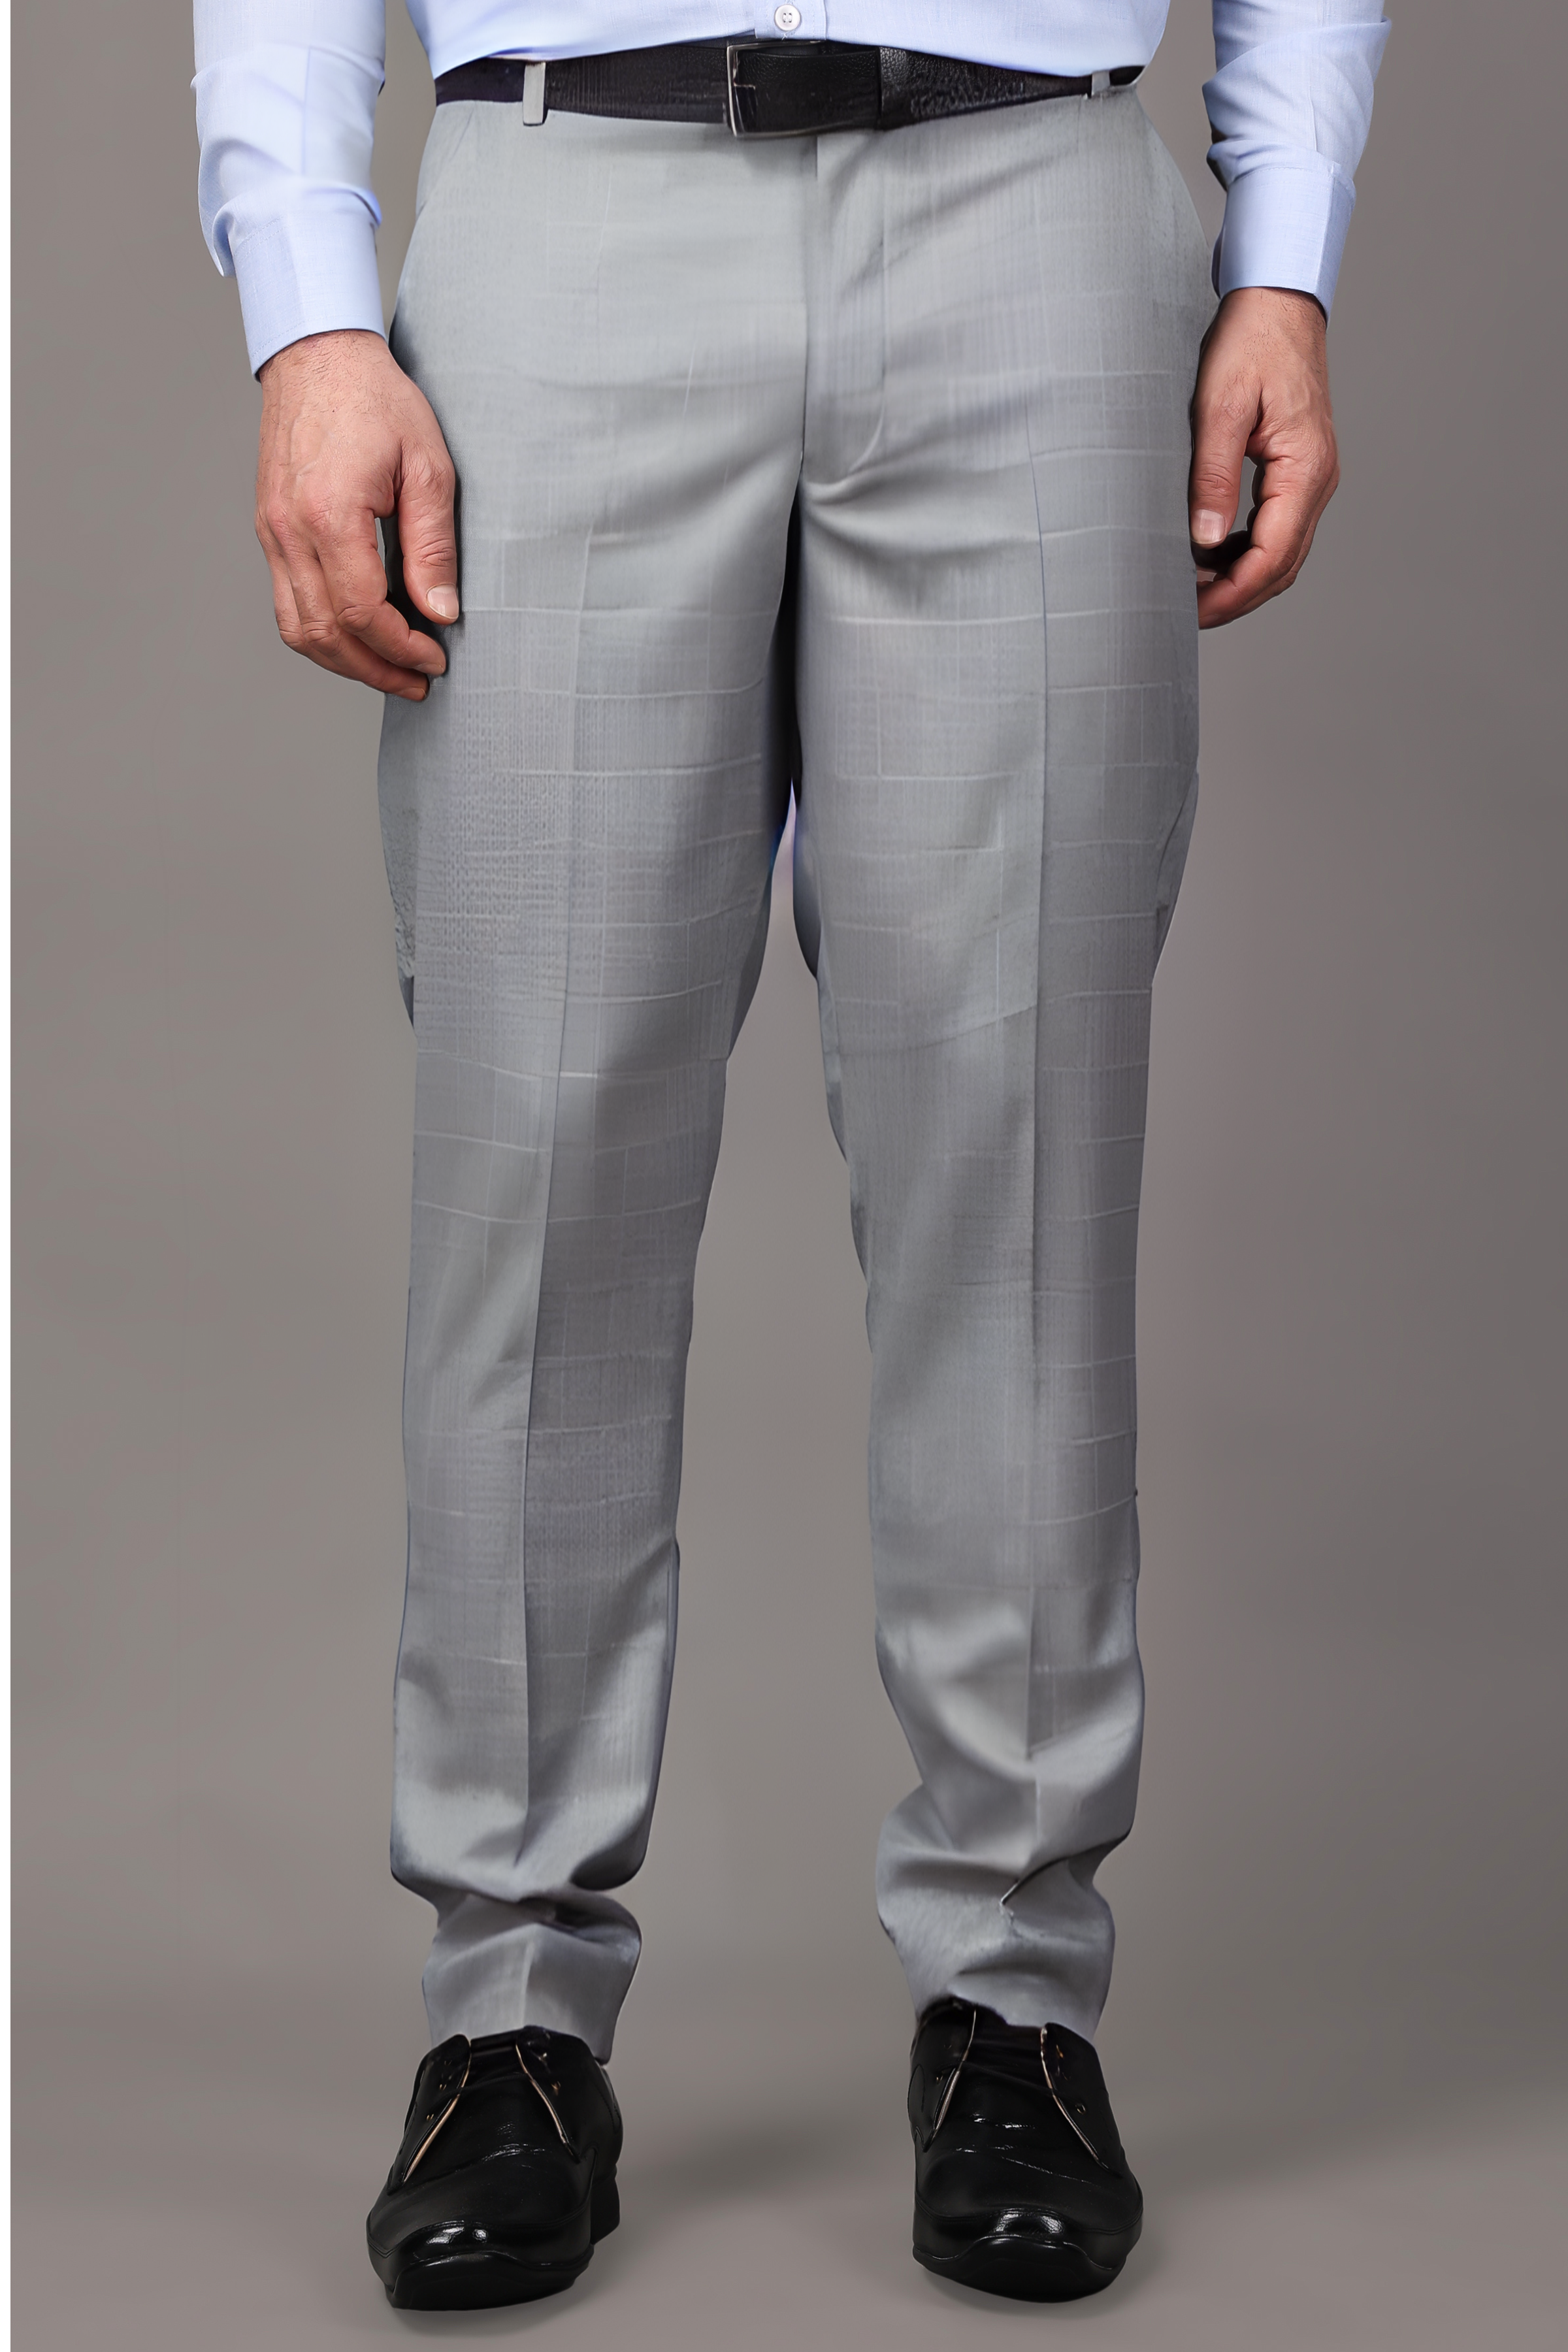 2023 Men Formal Trousers New Fashion Waist Metal Decoration Man Dress Pants  Simple Slim Business Casual Suit Pant Plus Size 38 - AliExpress